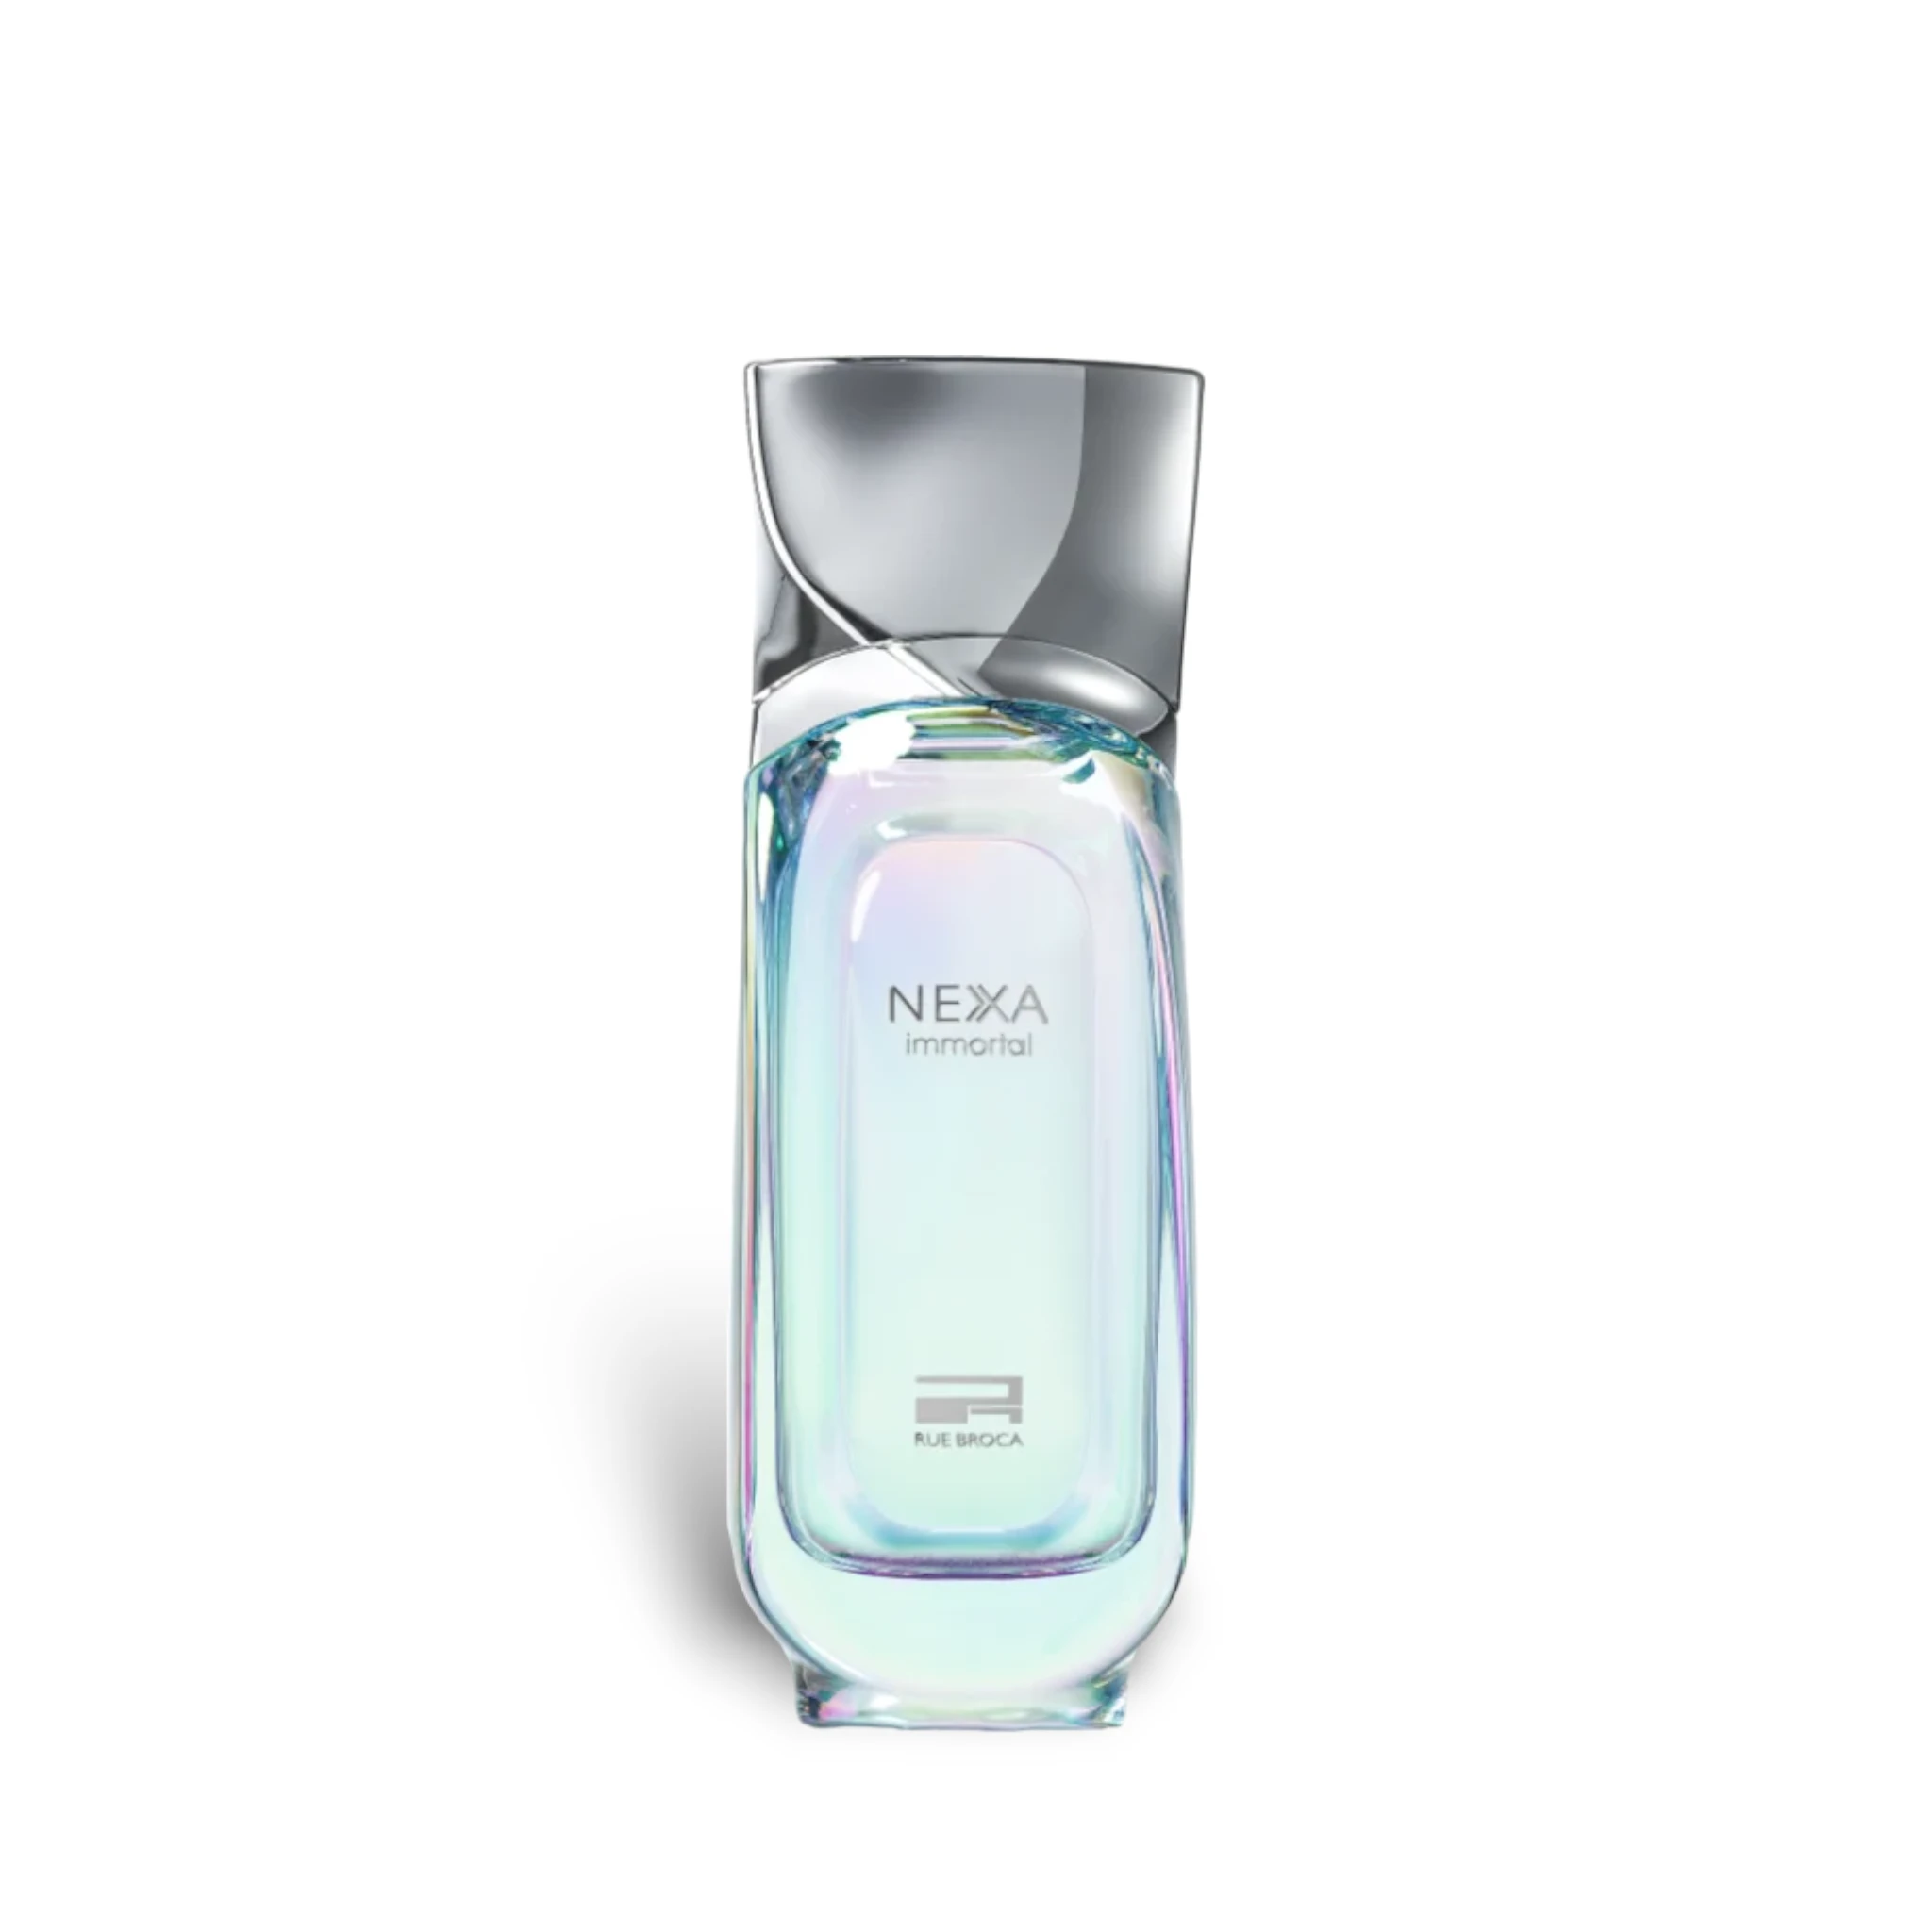 Nexa Immortal Perfume Eau De Parfum 100Ml By Rue Broca (Afnan)